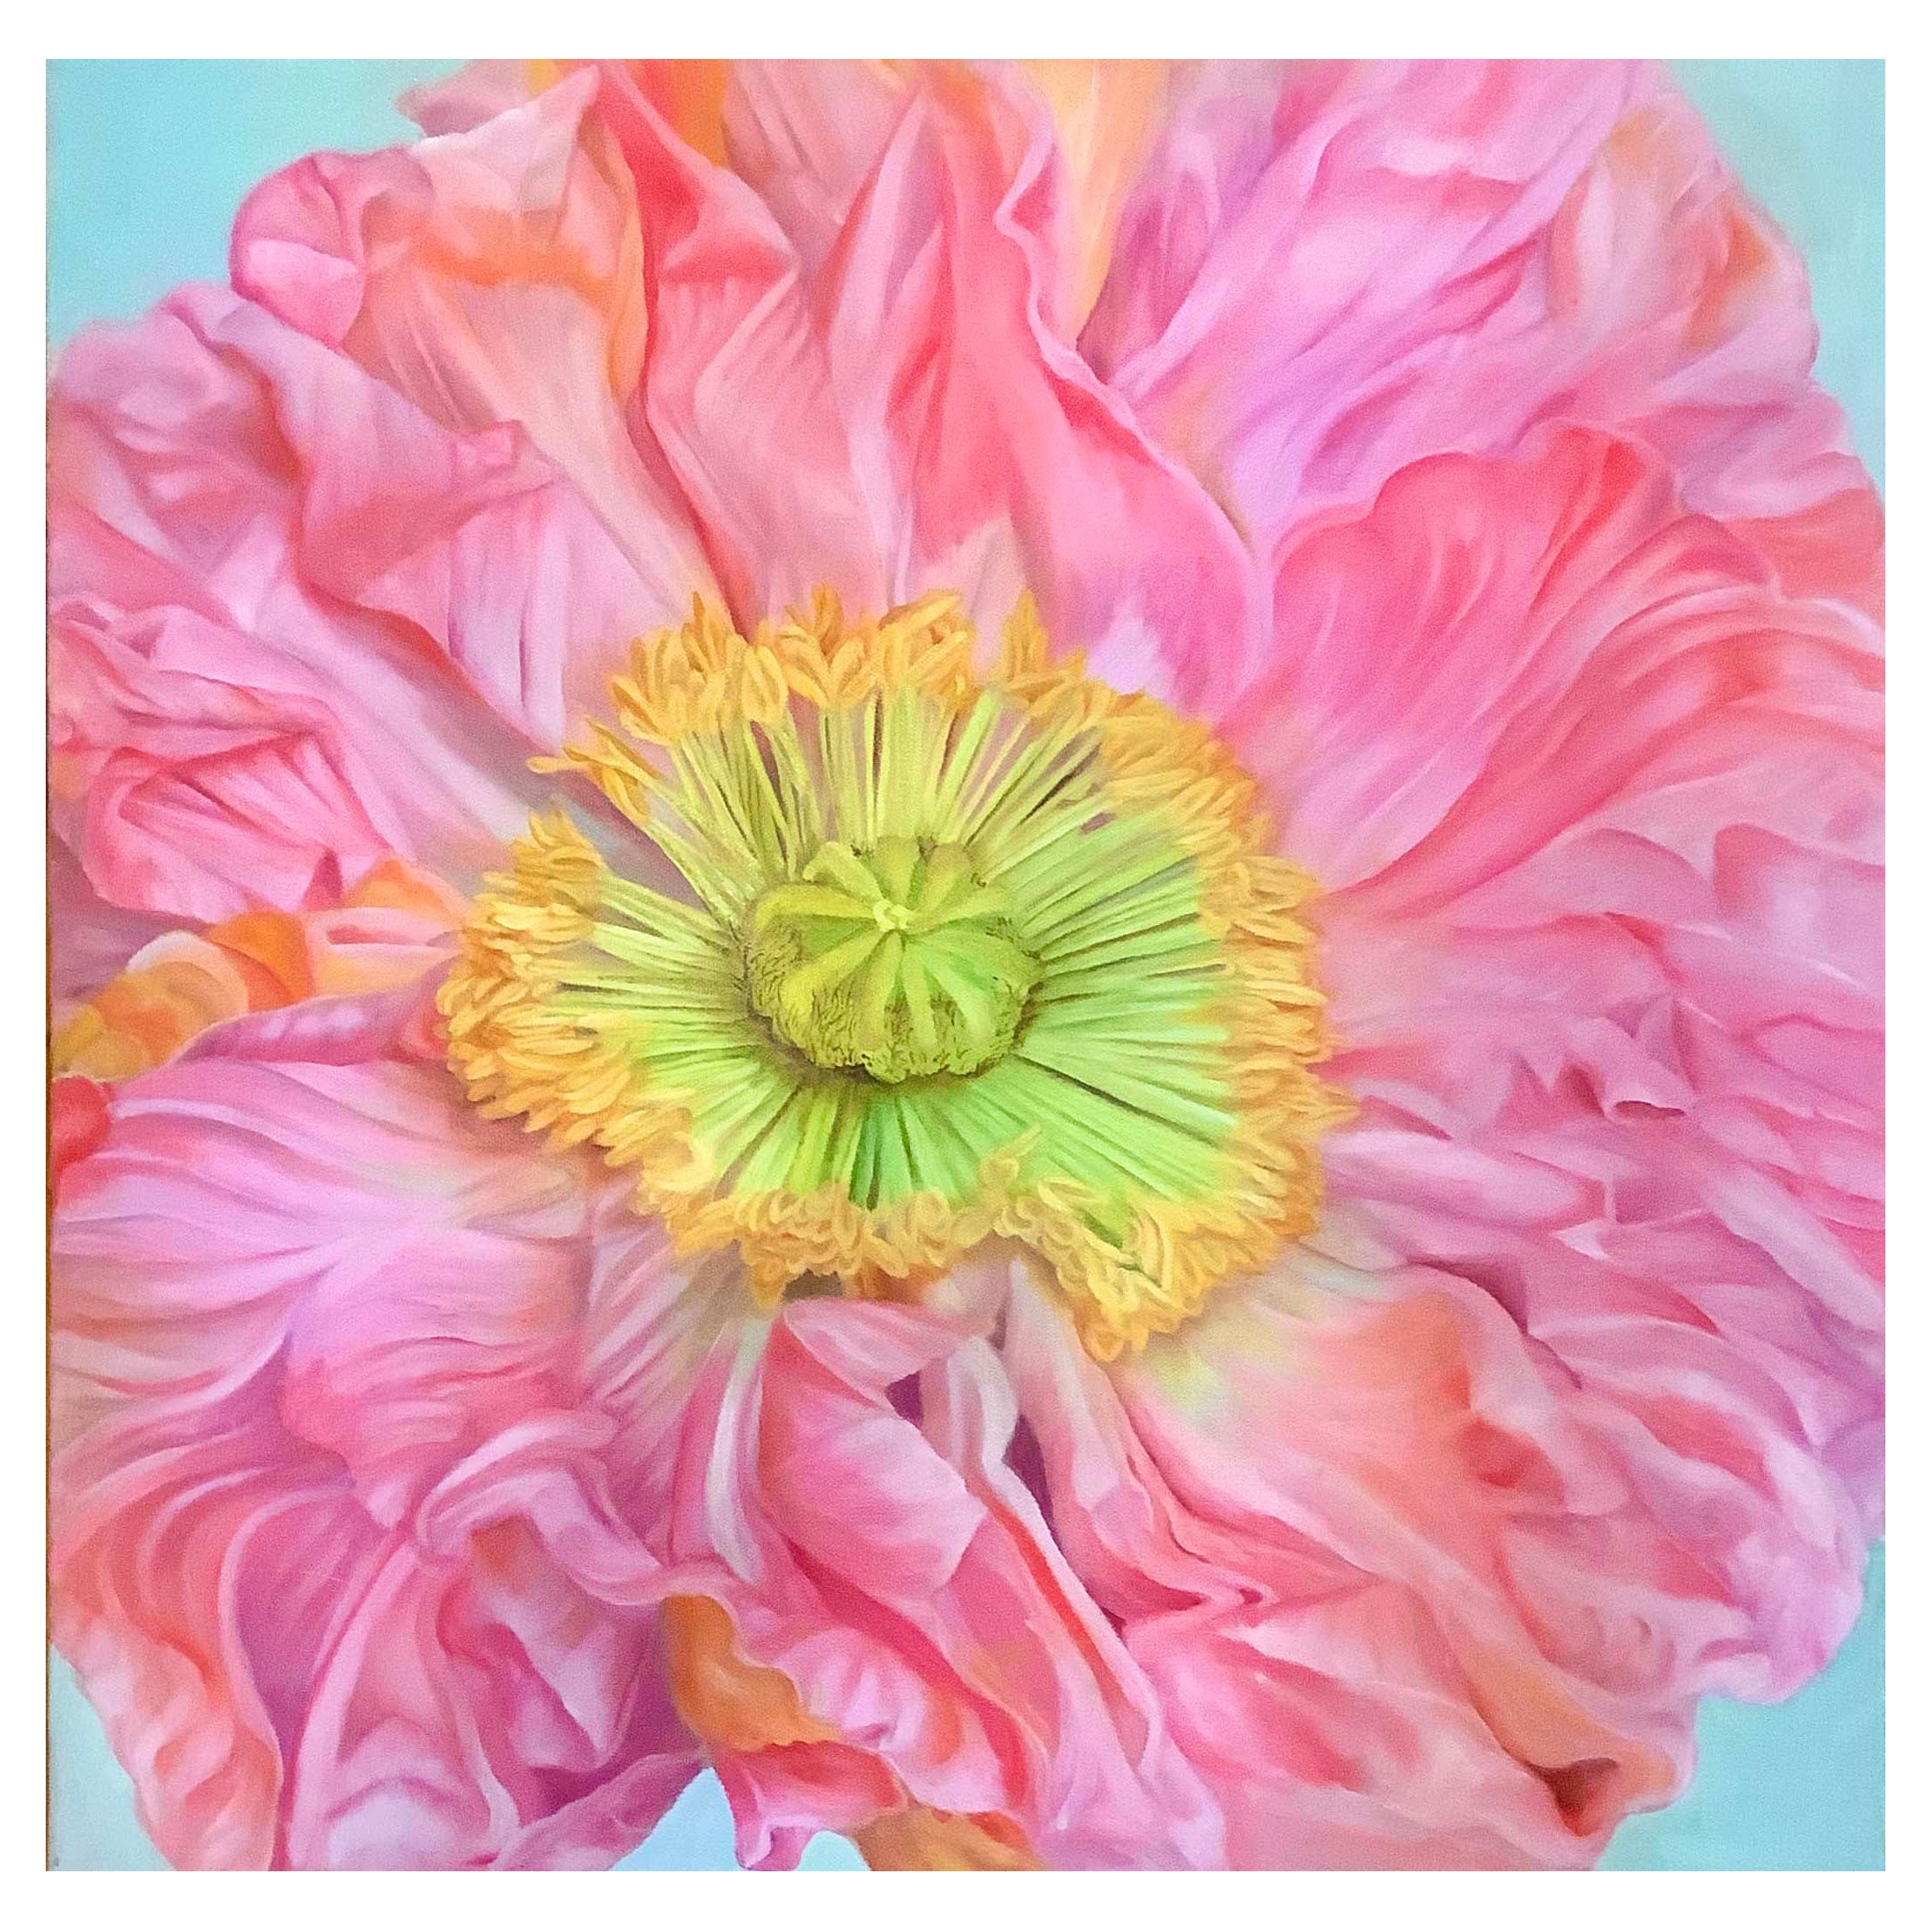 Framed Oil on Canvas "Paulette" - Poppy Flower by Shelly Gurton